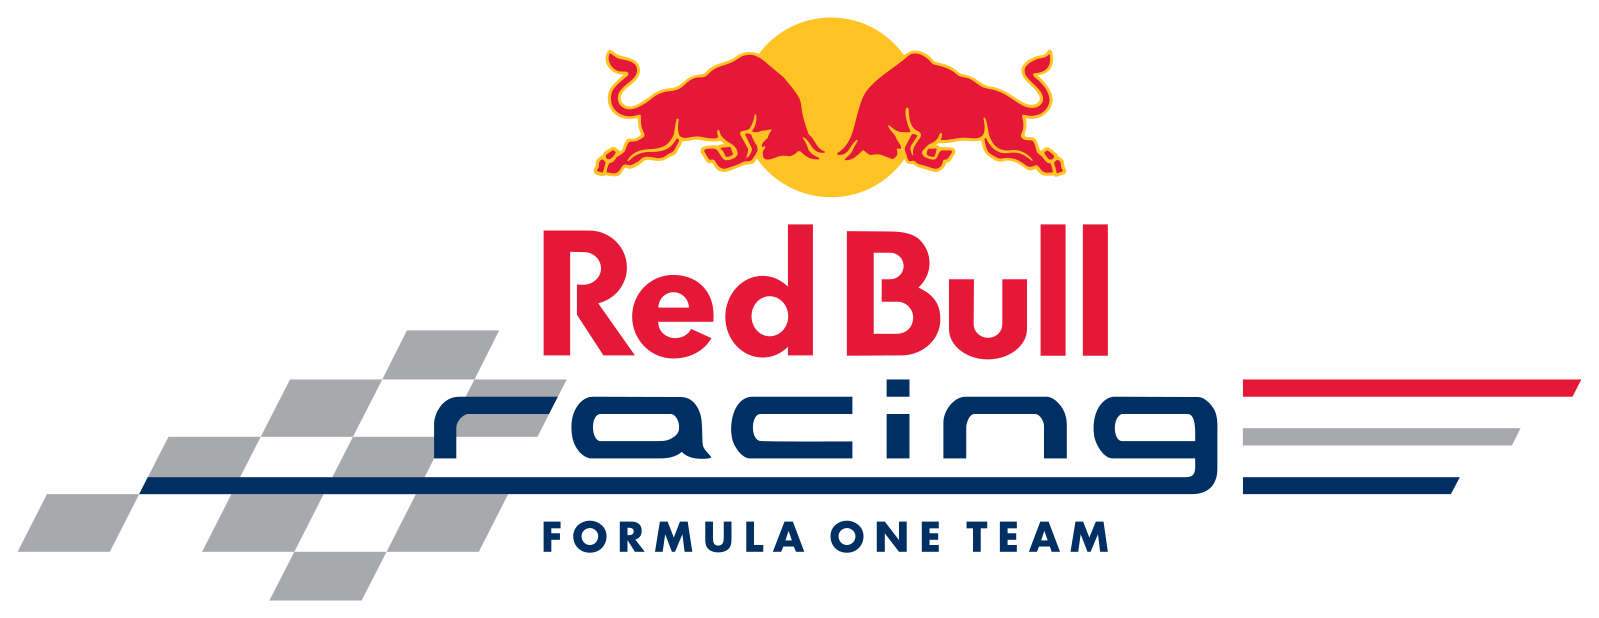 Red Bull Racing Logo - Datei:Red Bull Racing logo.svg | Renault Megane | Red bull racing ...